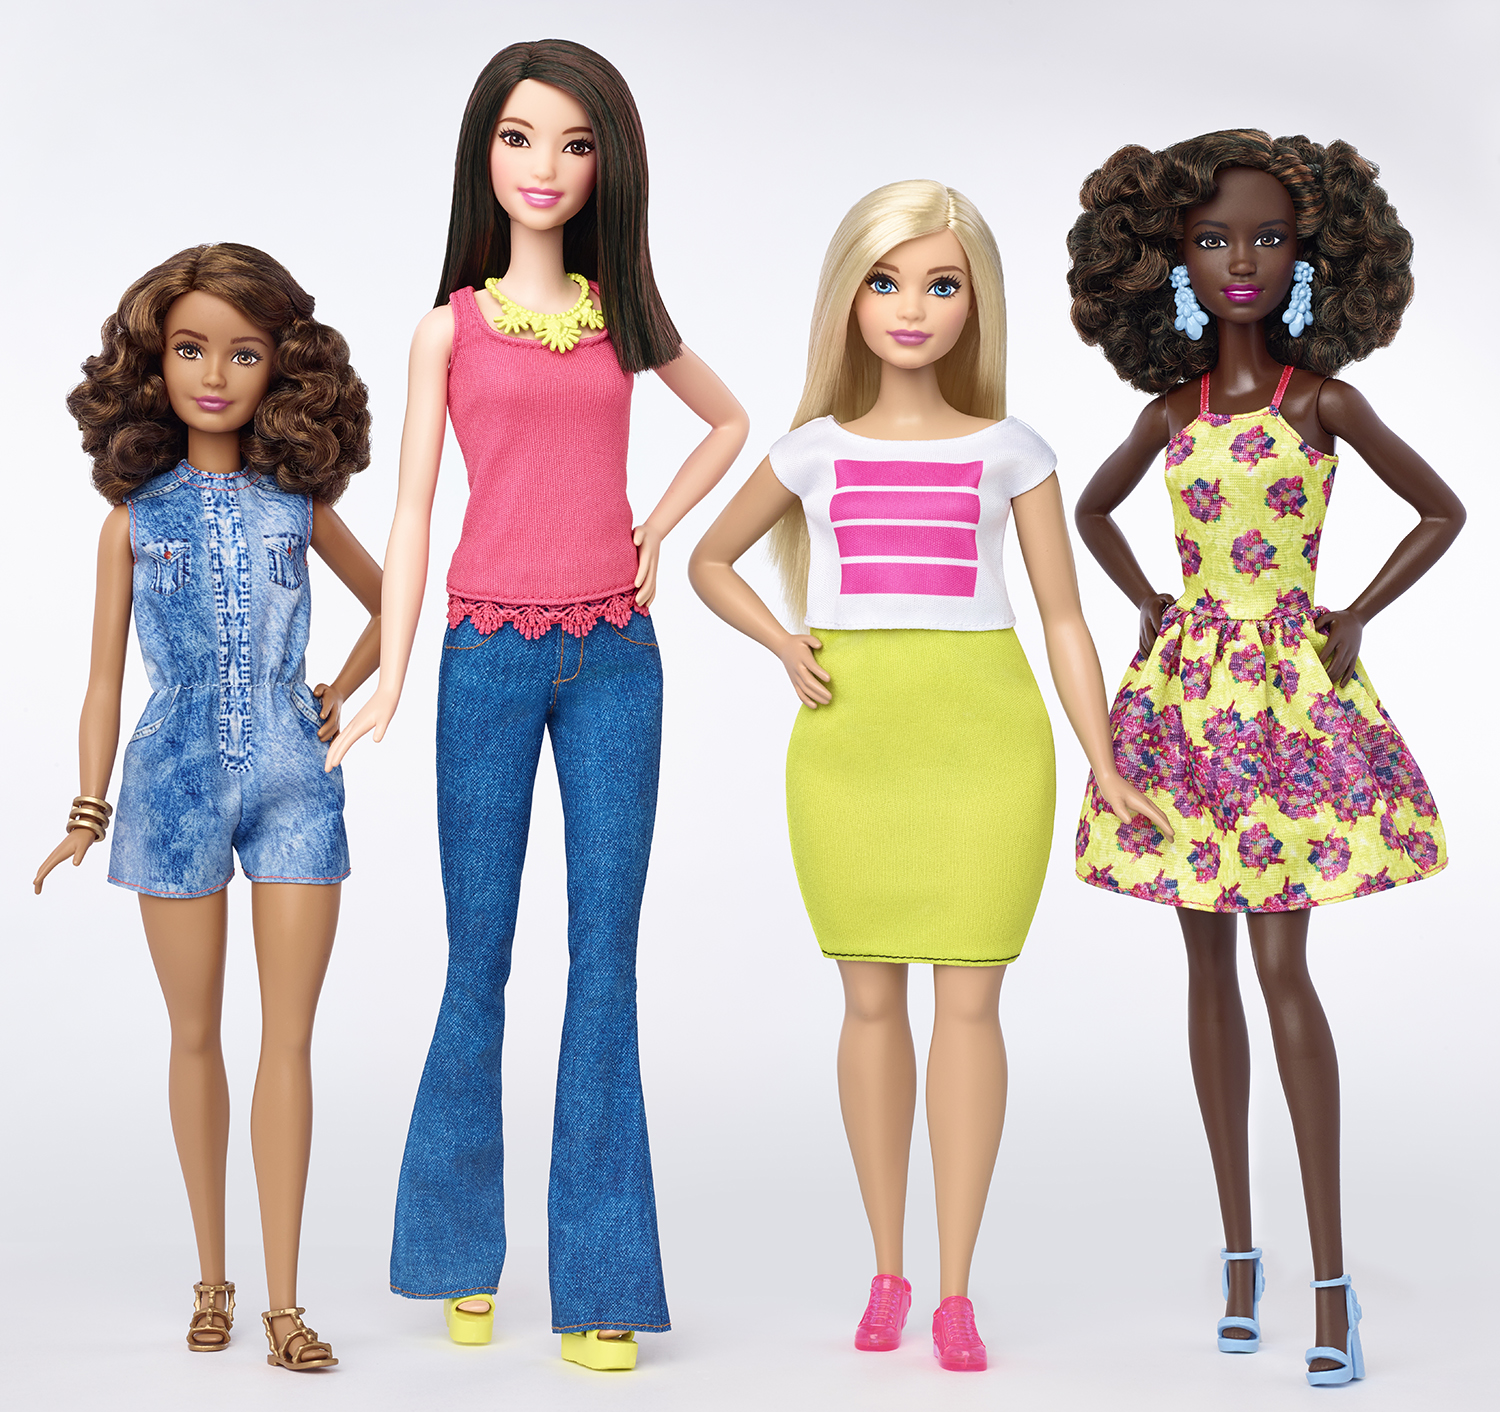 La evolución de Barbie